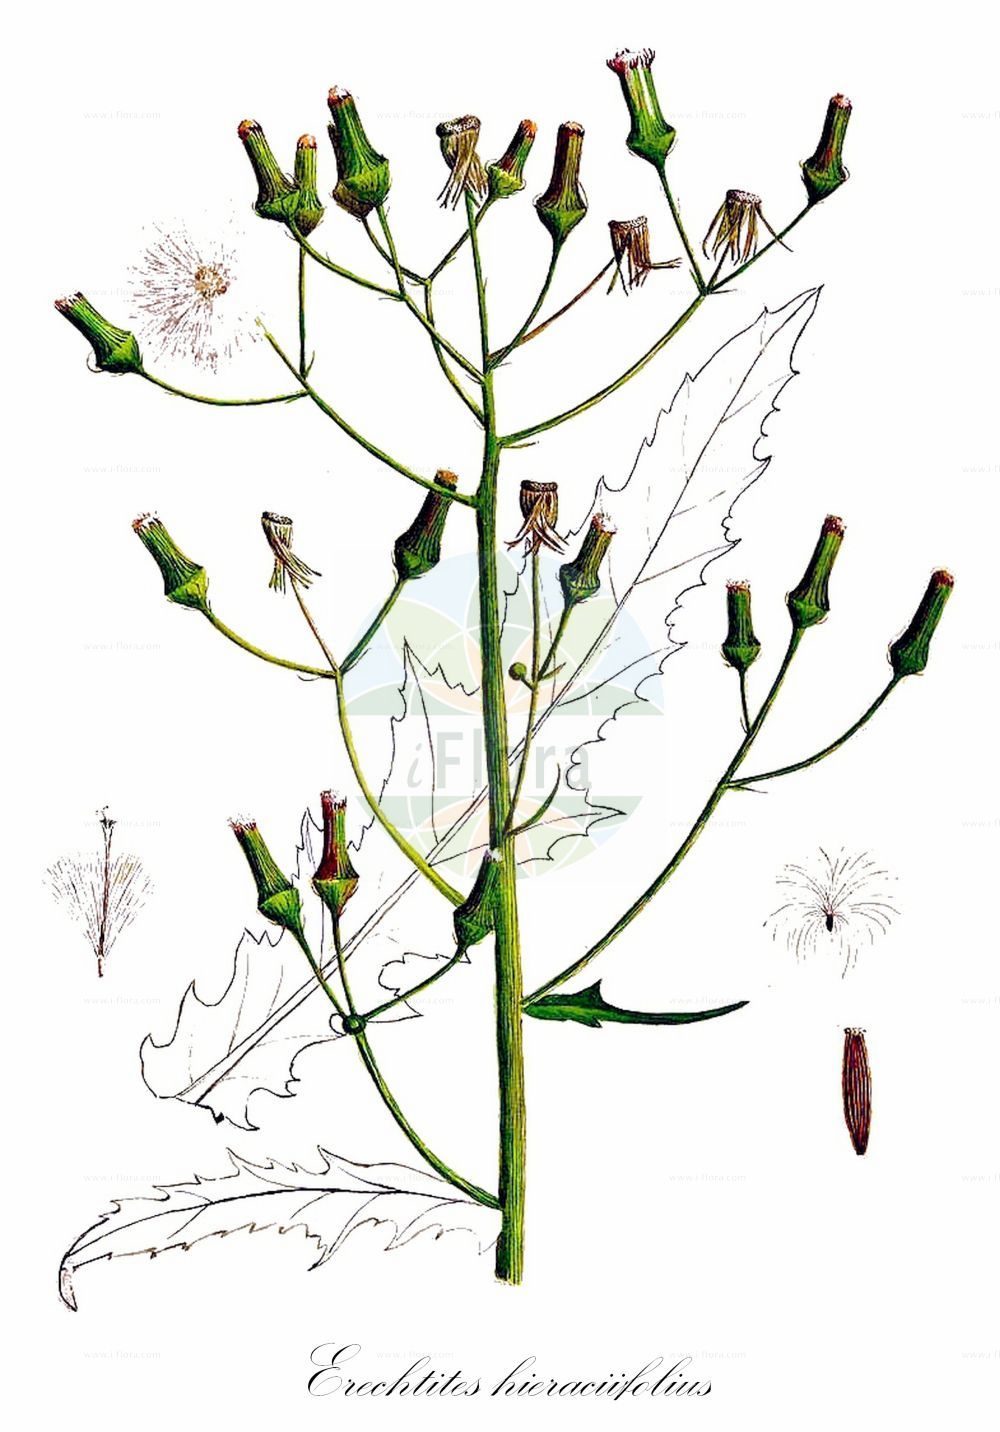 Historische Abbildung von Erechtites hieraciifolius (Habichts-Scheinkreuzkraut - American Burnweed). Das Bild zeigt Blatt, Bluete, Frucht und Same. ---- Historical Drawing of Erechtites hieraciifolius (Habichts-Scheinkreuzkraut - American Burnweed). The image is showing leaf, flower, fruit and seed.(Erechtites hieraciifolius,Habichts-Scheinkreuzkraut,American Burnweed,Erechtites hieraciifolius,Senecio hieraciifolius,Habichts-Scheinkreuzkraut,American Burnweed,Erechtites,Scheingreiskraut,Burnweed,Asteraceae,Korbblütengewächse,Daisy family,Blatt,Bluete,Frucht,Same,leaf,flower,fruit,seed,Sharp (1888-1910))